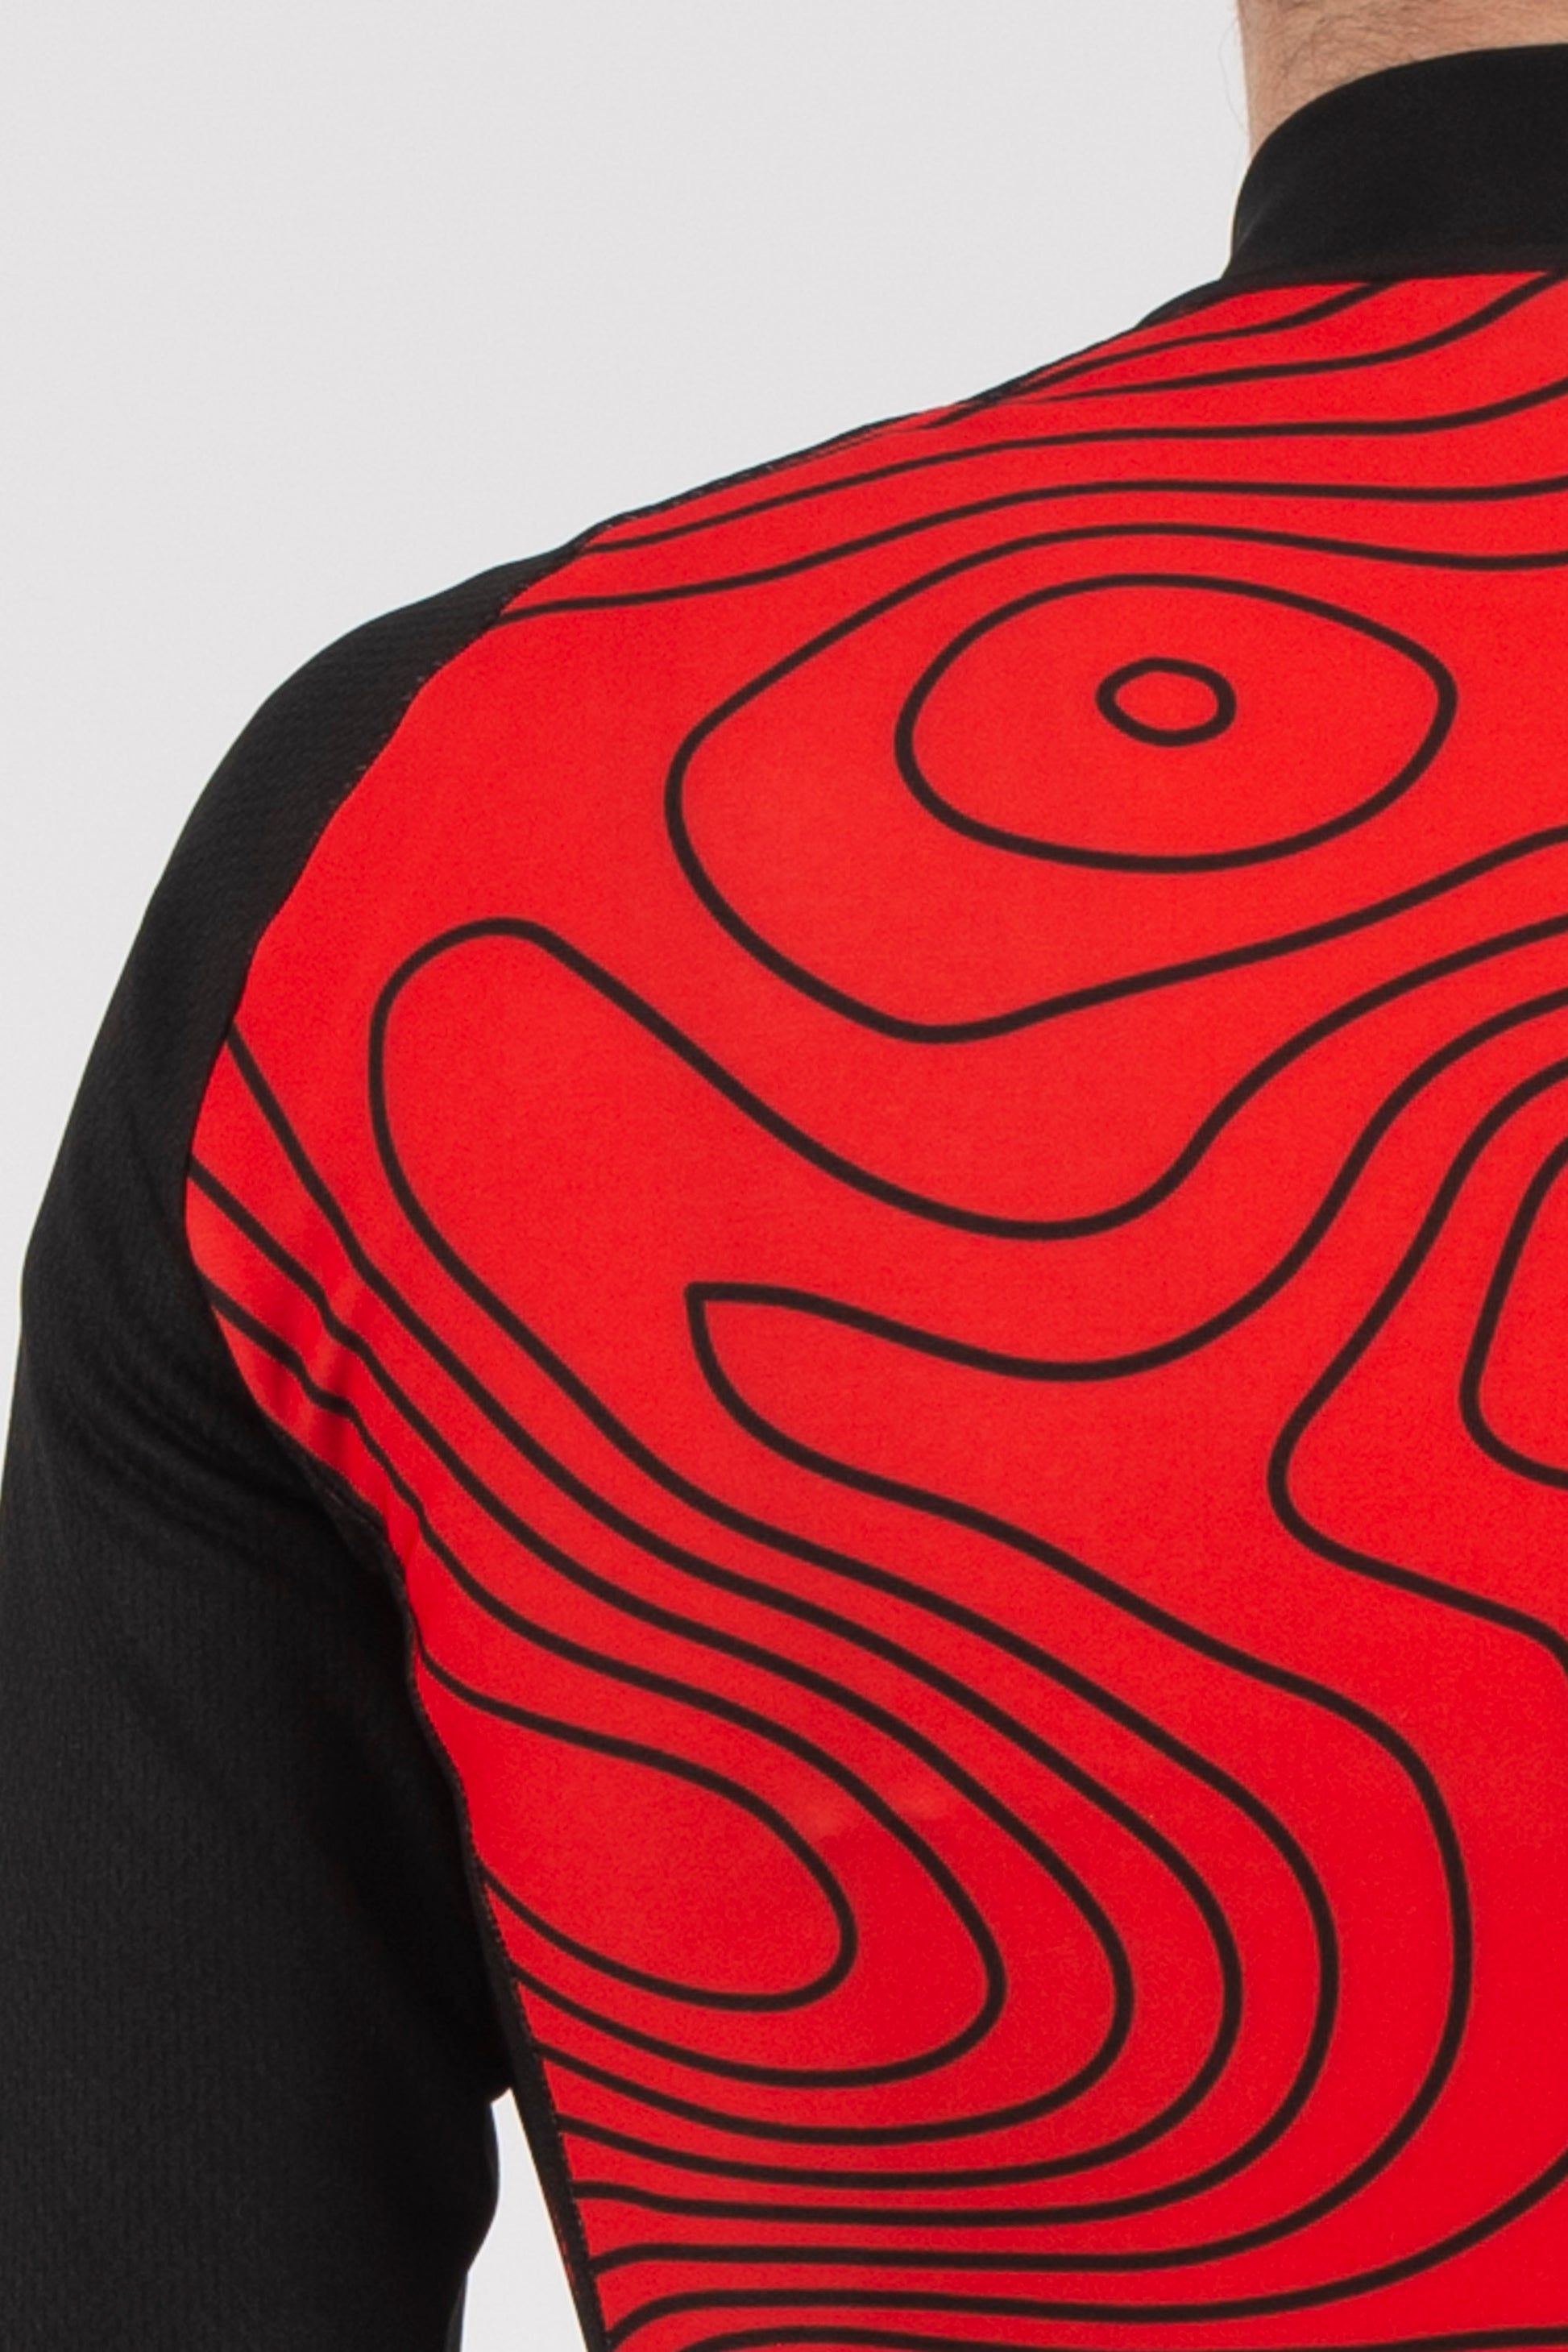 Terrain Red Long Sleeve Jersey - Lusso Cycle Wear